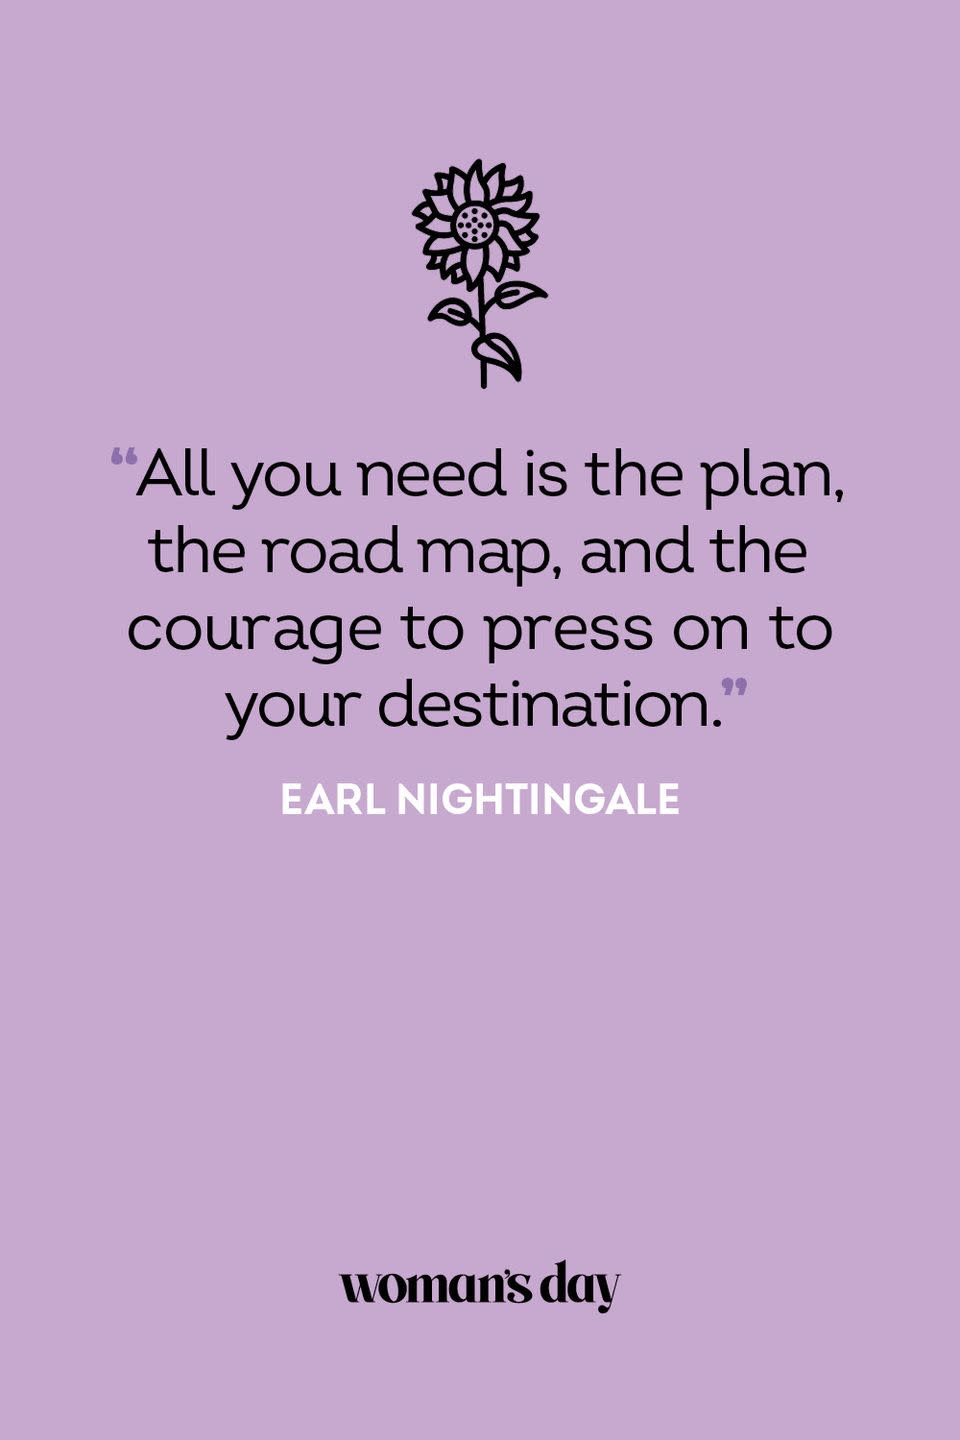 Earl Nightingale